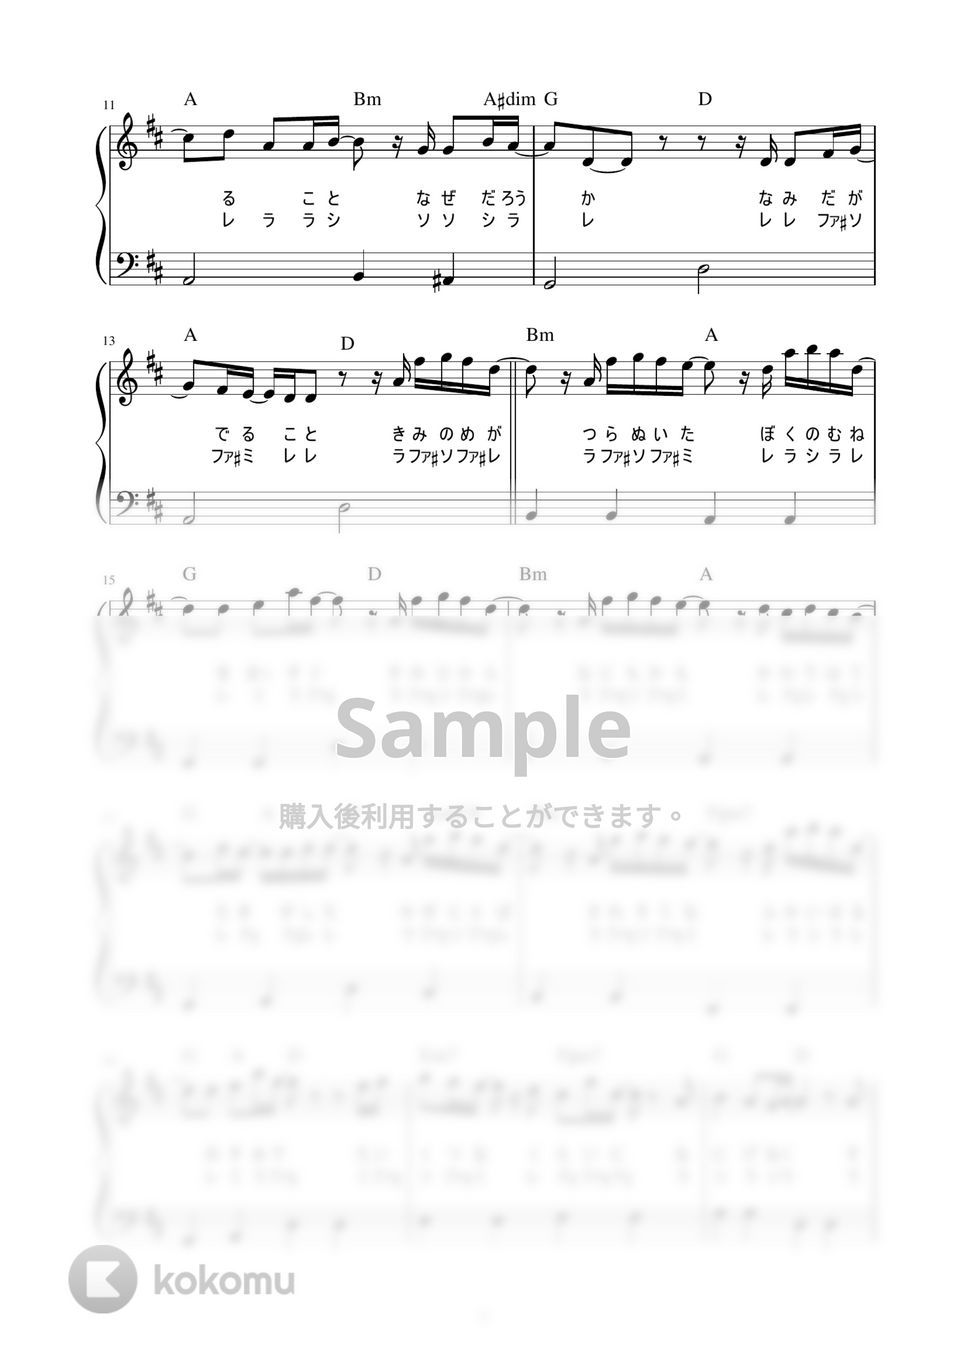 菅田将暉 - まちがいさがし (かんたん / 歌詞付き / ドレミ付き / 初心者) by piano.tokyo